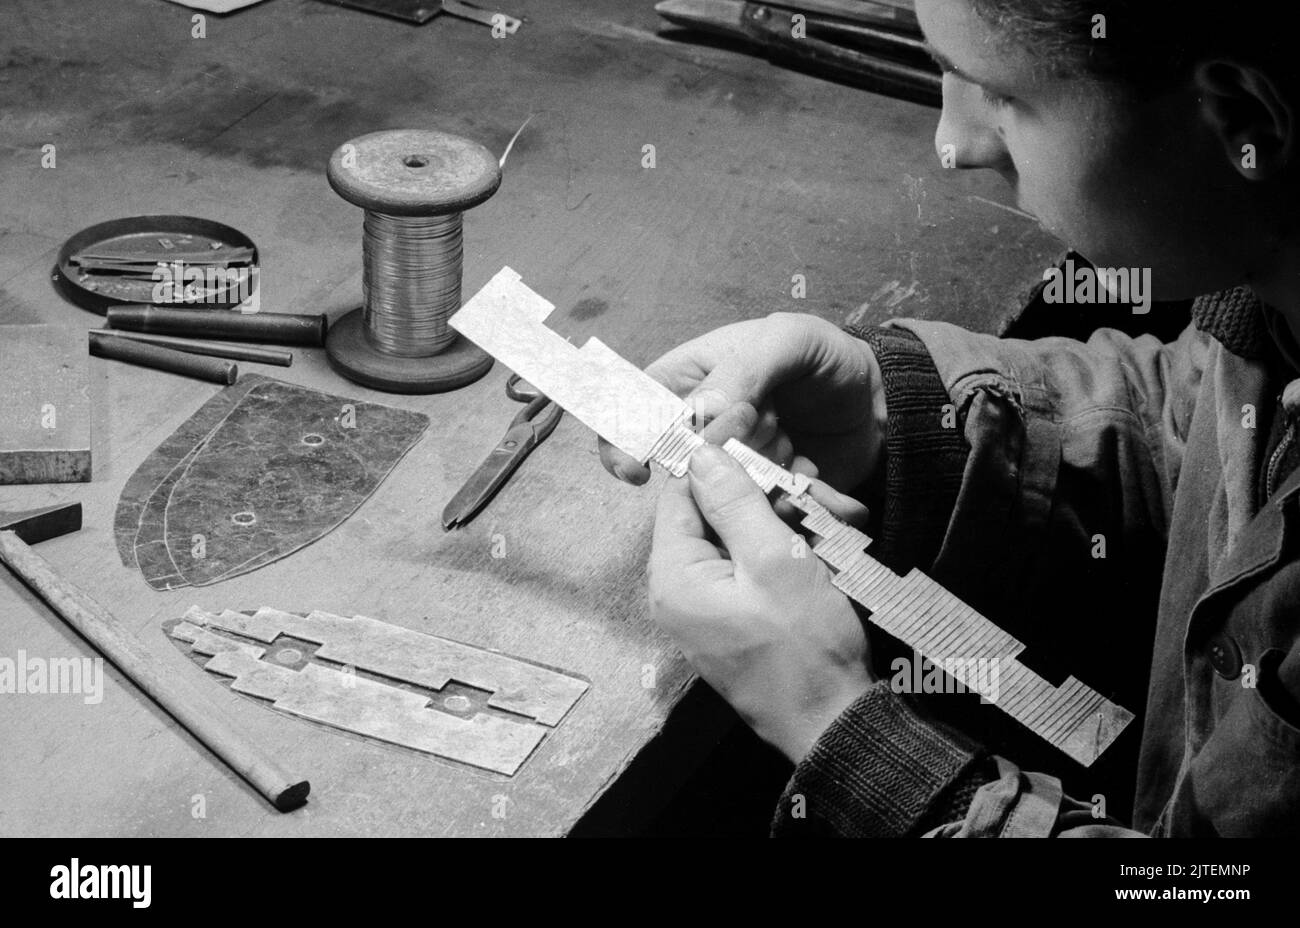 Work an seinem Arbeitsplatz in der Siemens-Werkstatt, Berlin, Deutschland 1947. Stockfoto